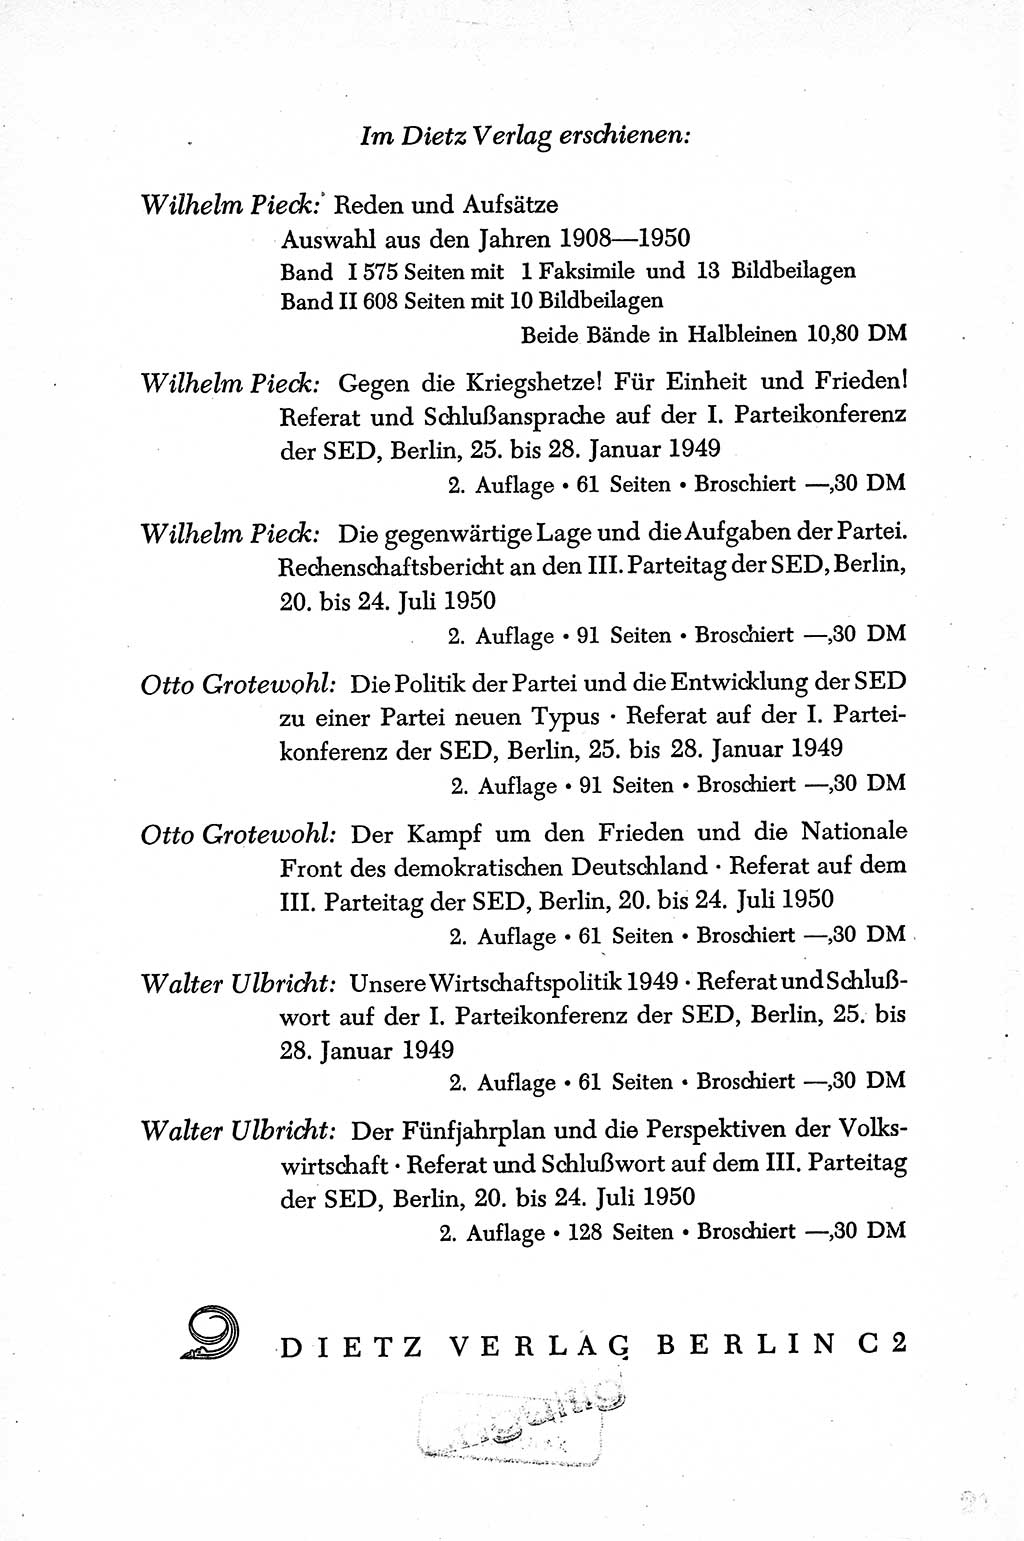 Dokumente der Sozialistischen Einheitspartei Deutschlands (SED) [Sowjetische Besatzungszone (SBZ) Deutschlands] 1946-1948, Seite 288 (Dok. SED SBZ Dtl. 1946-1948, S. 288)